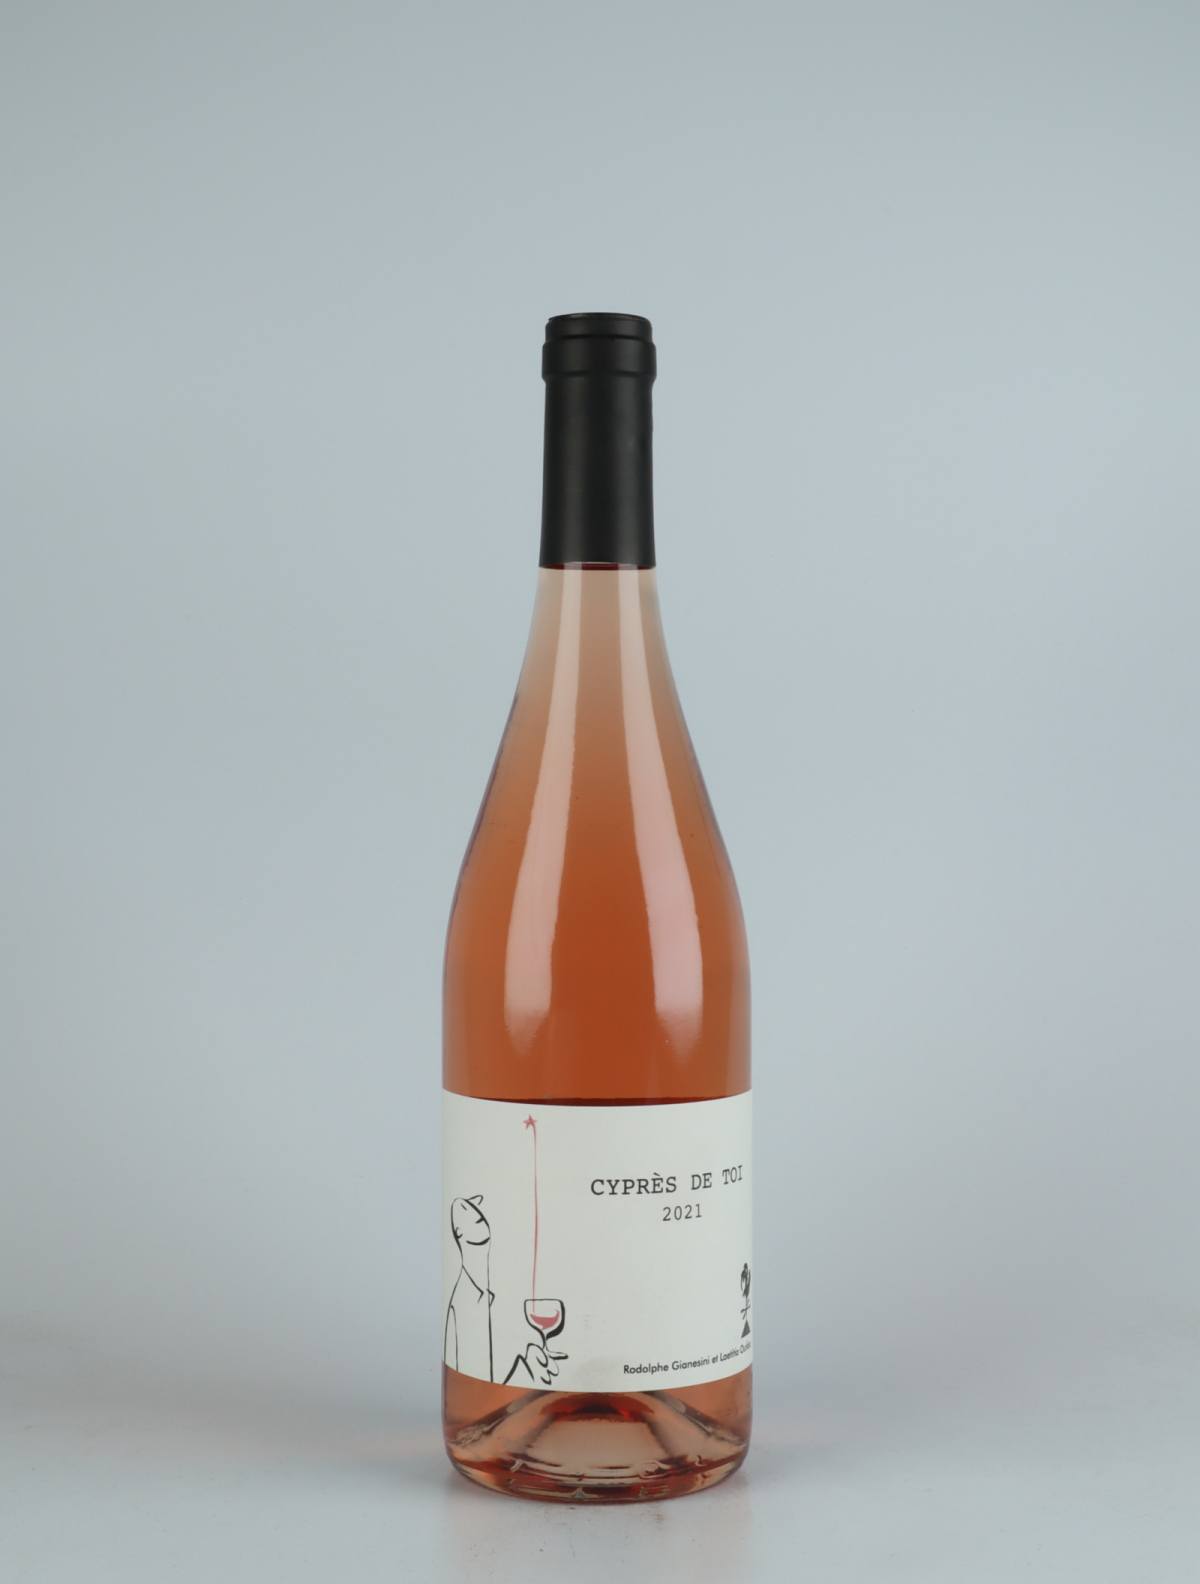 En flaske 2021 Cypres de Toi Rosé Rosé fra Fond Cyprès, Languedoc i Frankrig